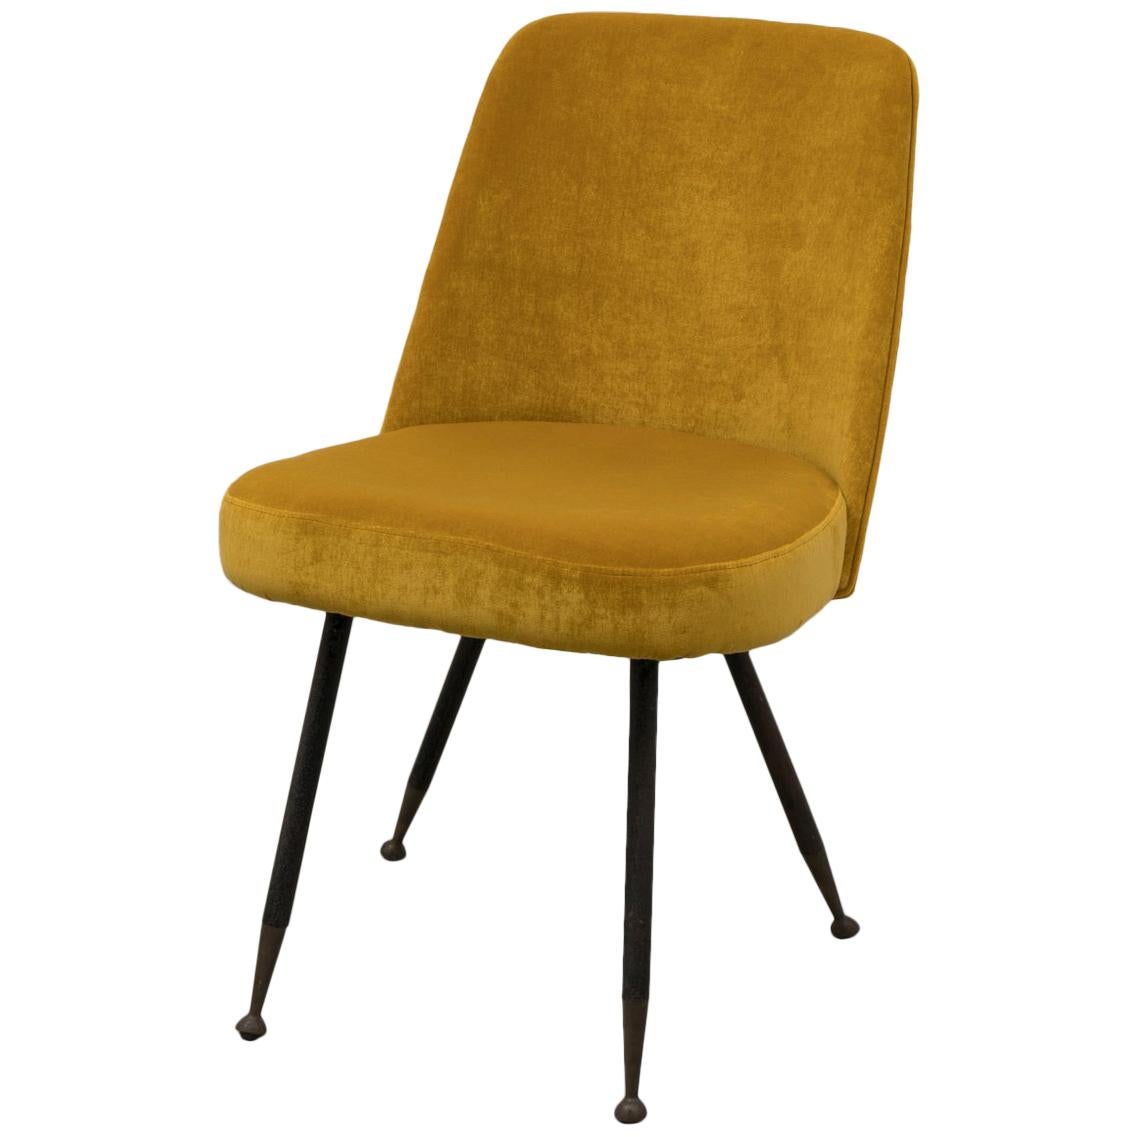 Gastone Rinaldi Restored Midcentury Velvet Desk Chair for RIMA, 1950s For Sale